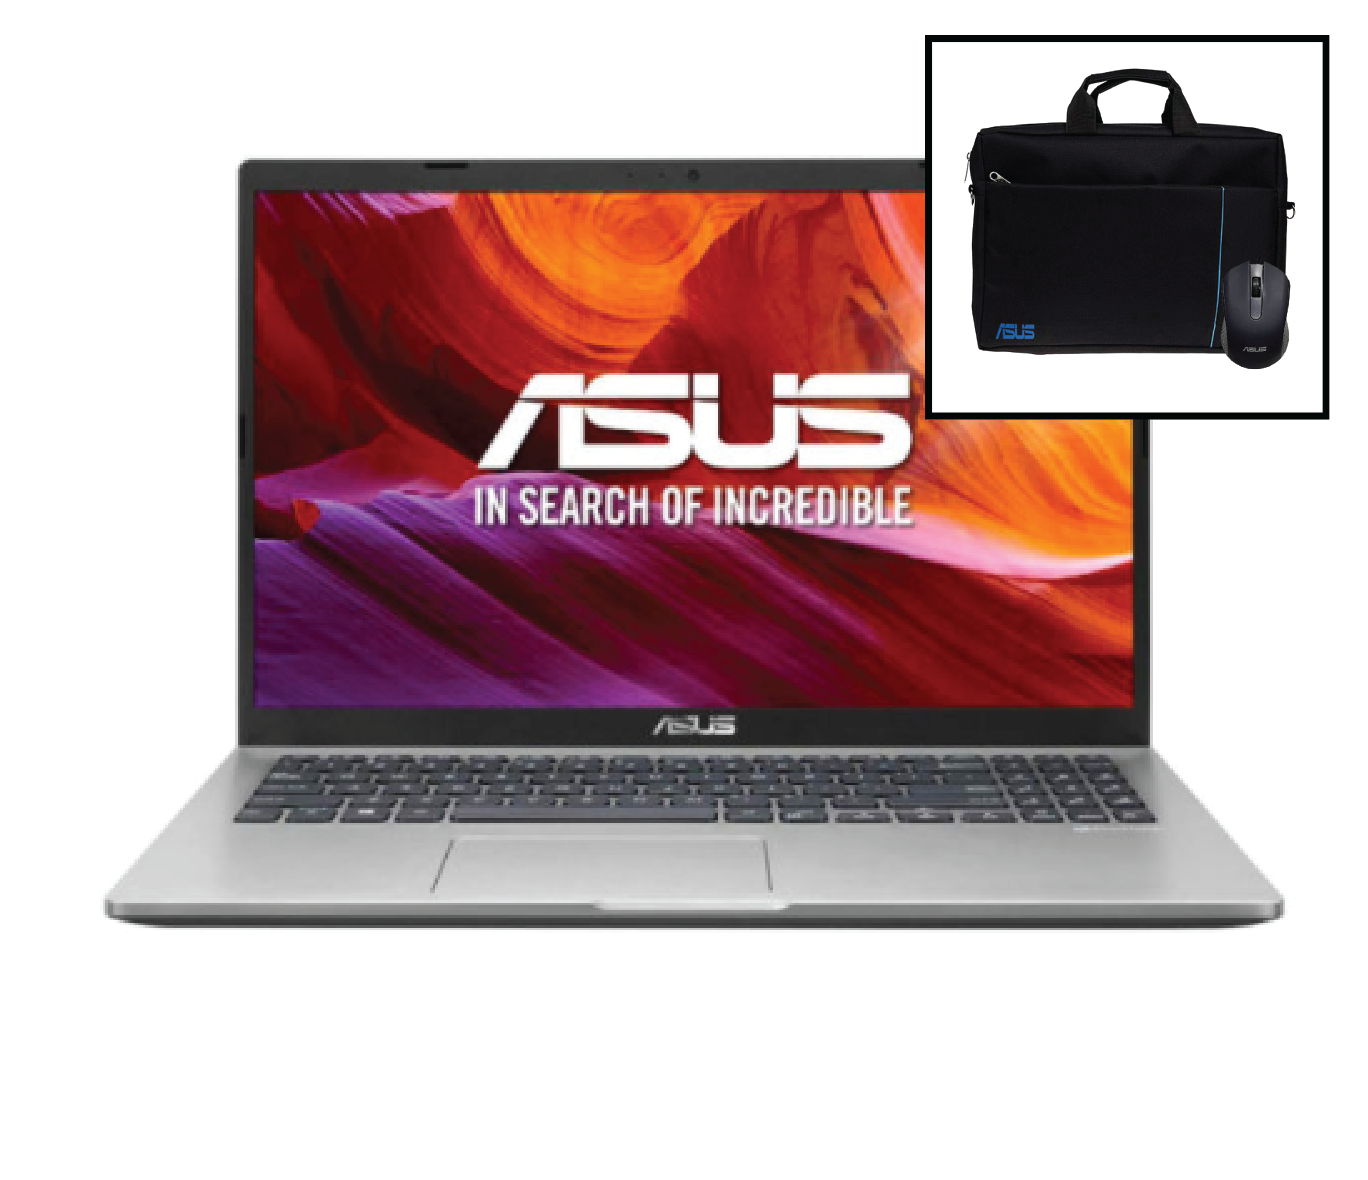 لپ تاپ ایسوس 15اینچ  Asus VivoBook 15 R521JP : Core i5-1035 / 8GB RAM / 1TB HDD / 2GB MX330 thumb 622